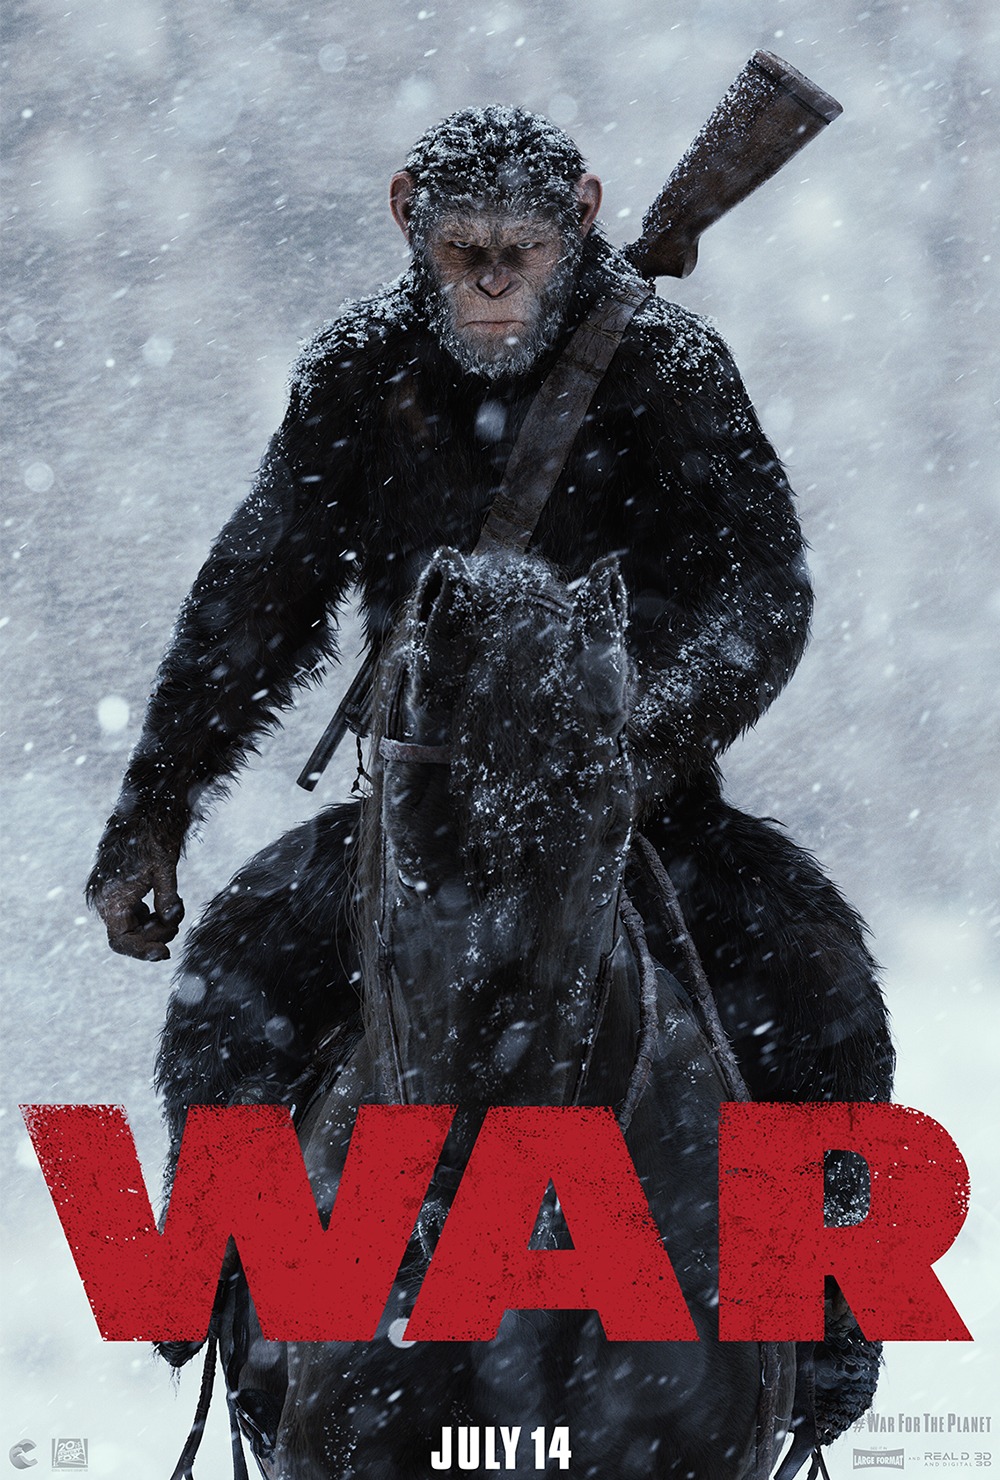 电影《猩球崛起3:终极之战》海报设计 - 视觉同